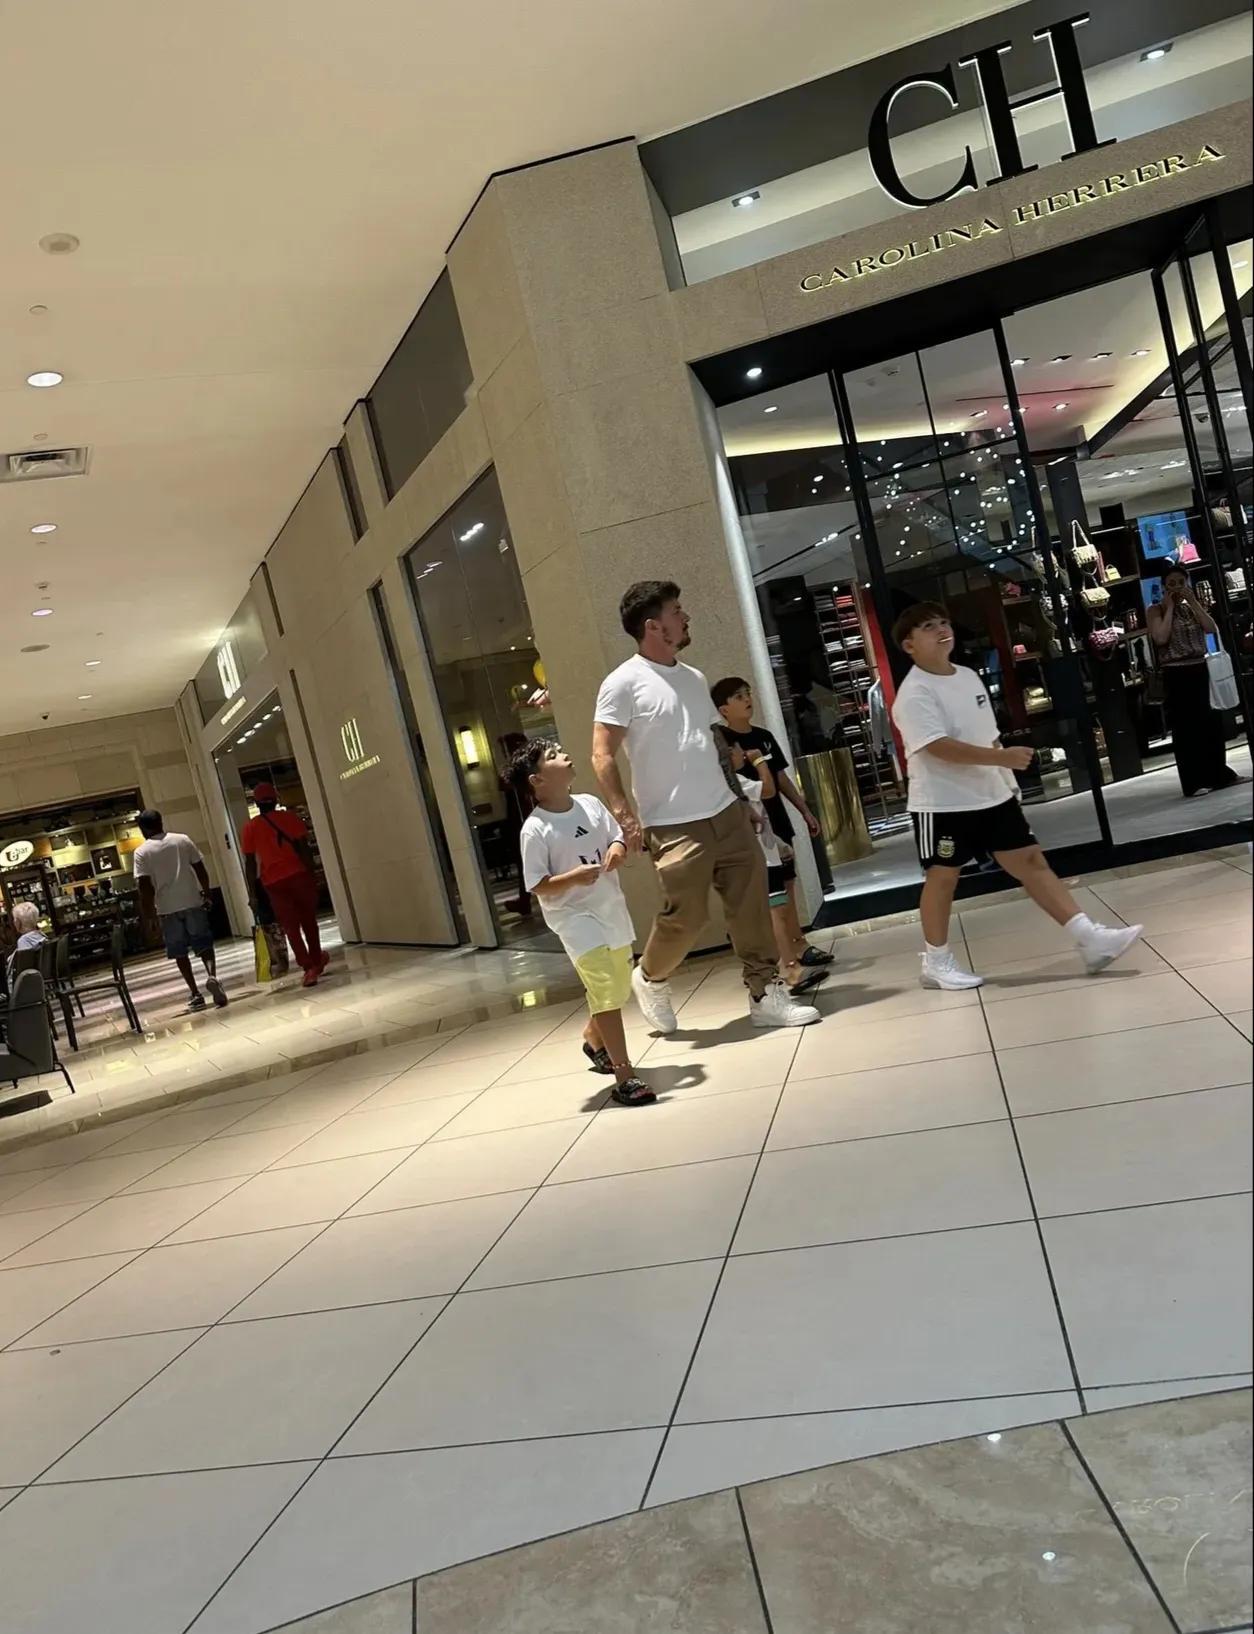 梅西的哥哥罗德里戈带着梅西的三个儿子和自己的儿子在迈阿密逛商场。
五个人悠哉游哉